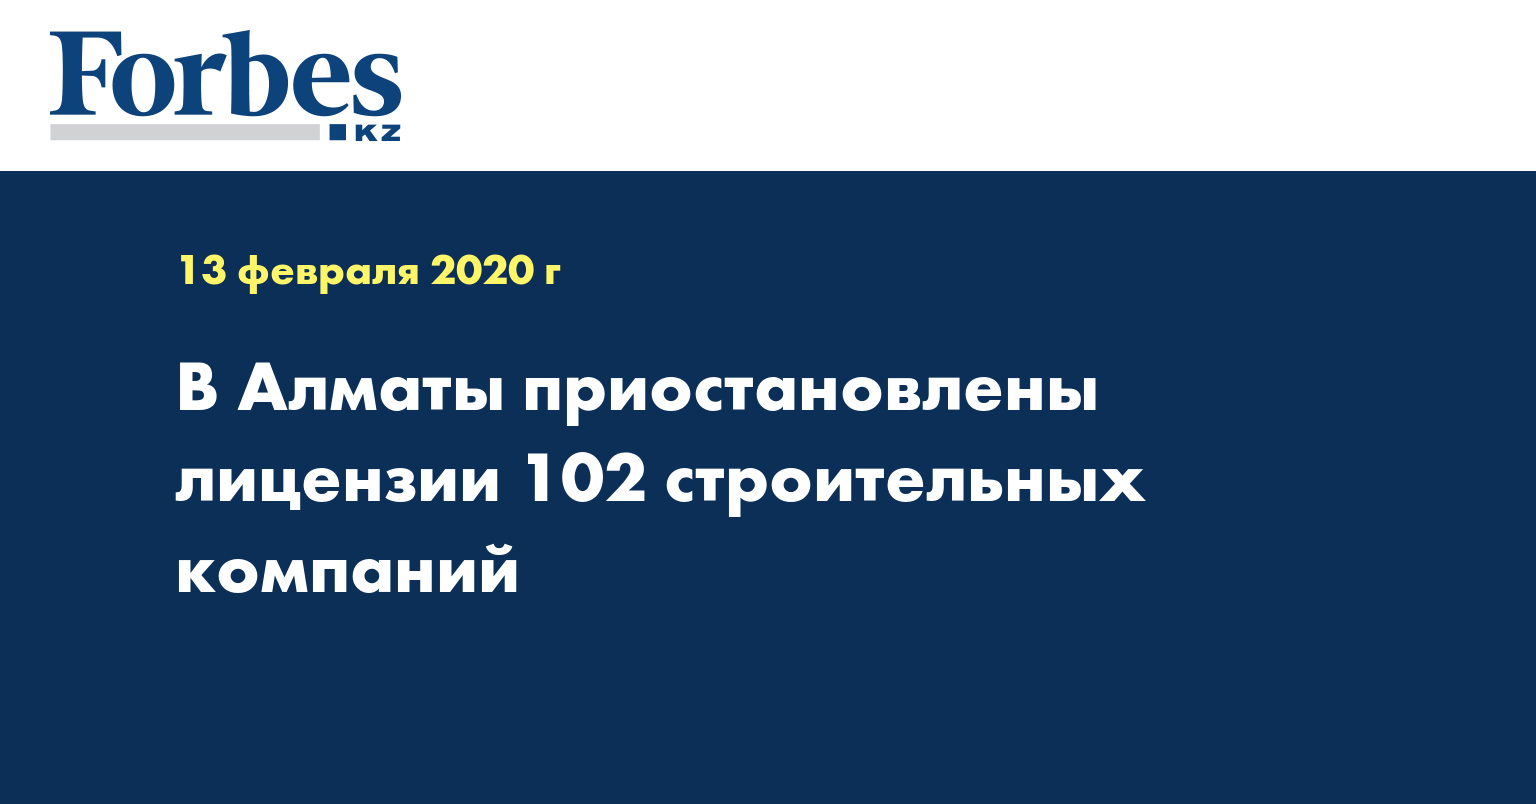 В Алматы приостановлены лицензии 102 строительных компаний